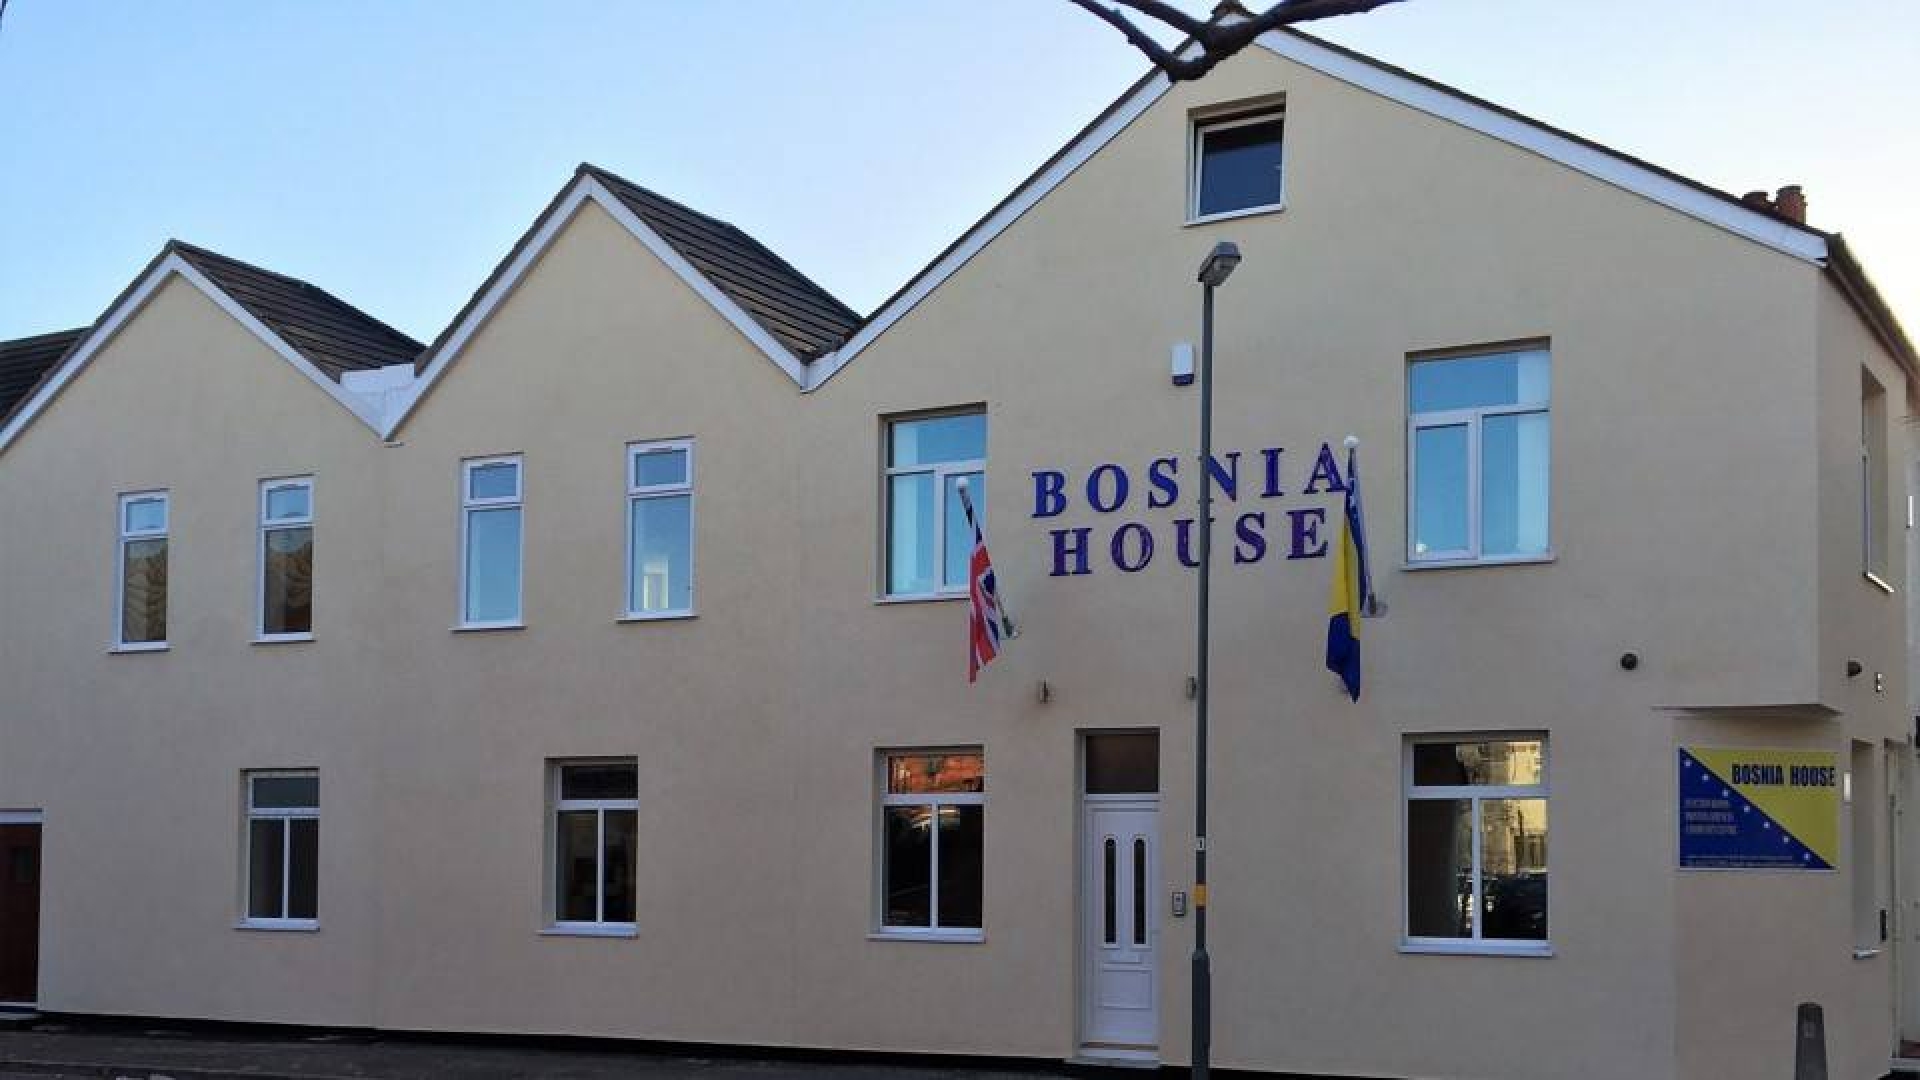 Sjedište Bosnia UK Network je u Bosanskoj kući u Birminghamu, ali planiraju kupovinu nove i veće zgrade. Svoje prostorije su ustupili i za mnoge sirijske te ukrajinske izbjeglice.